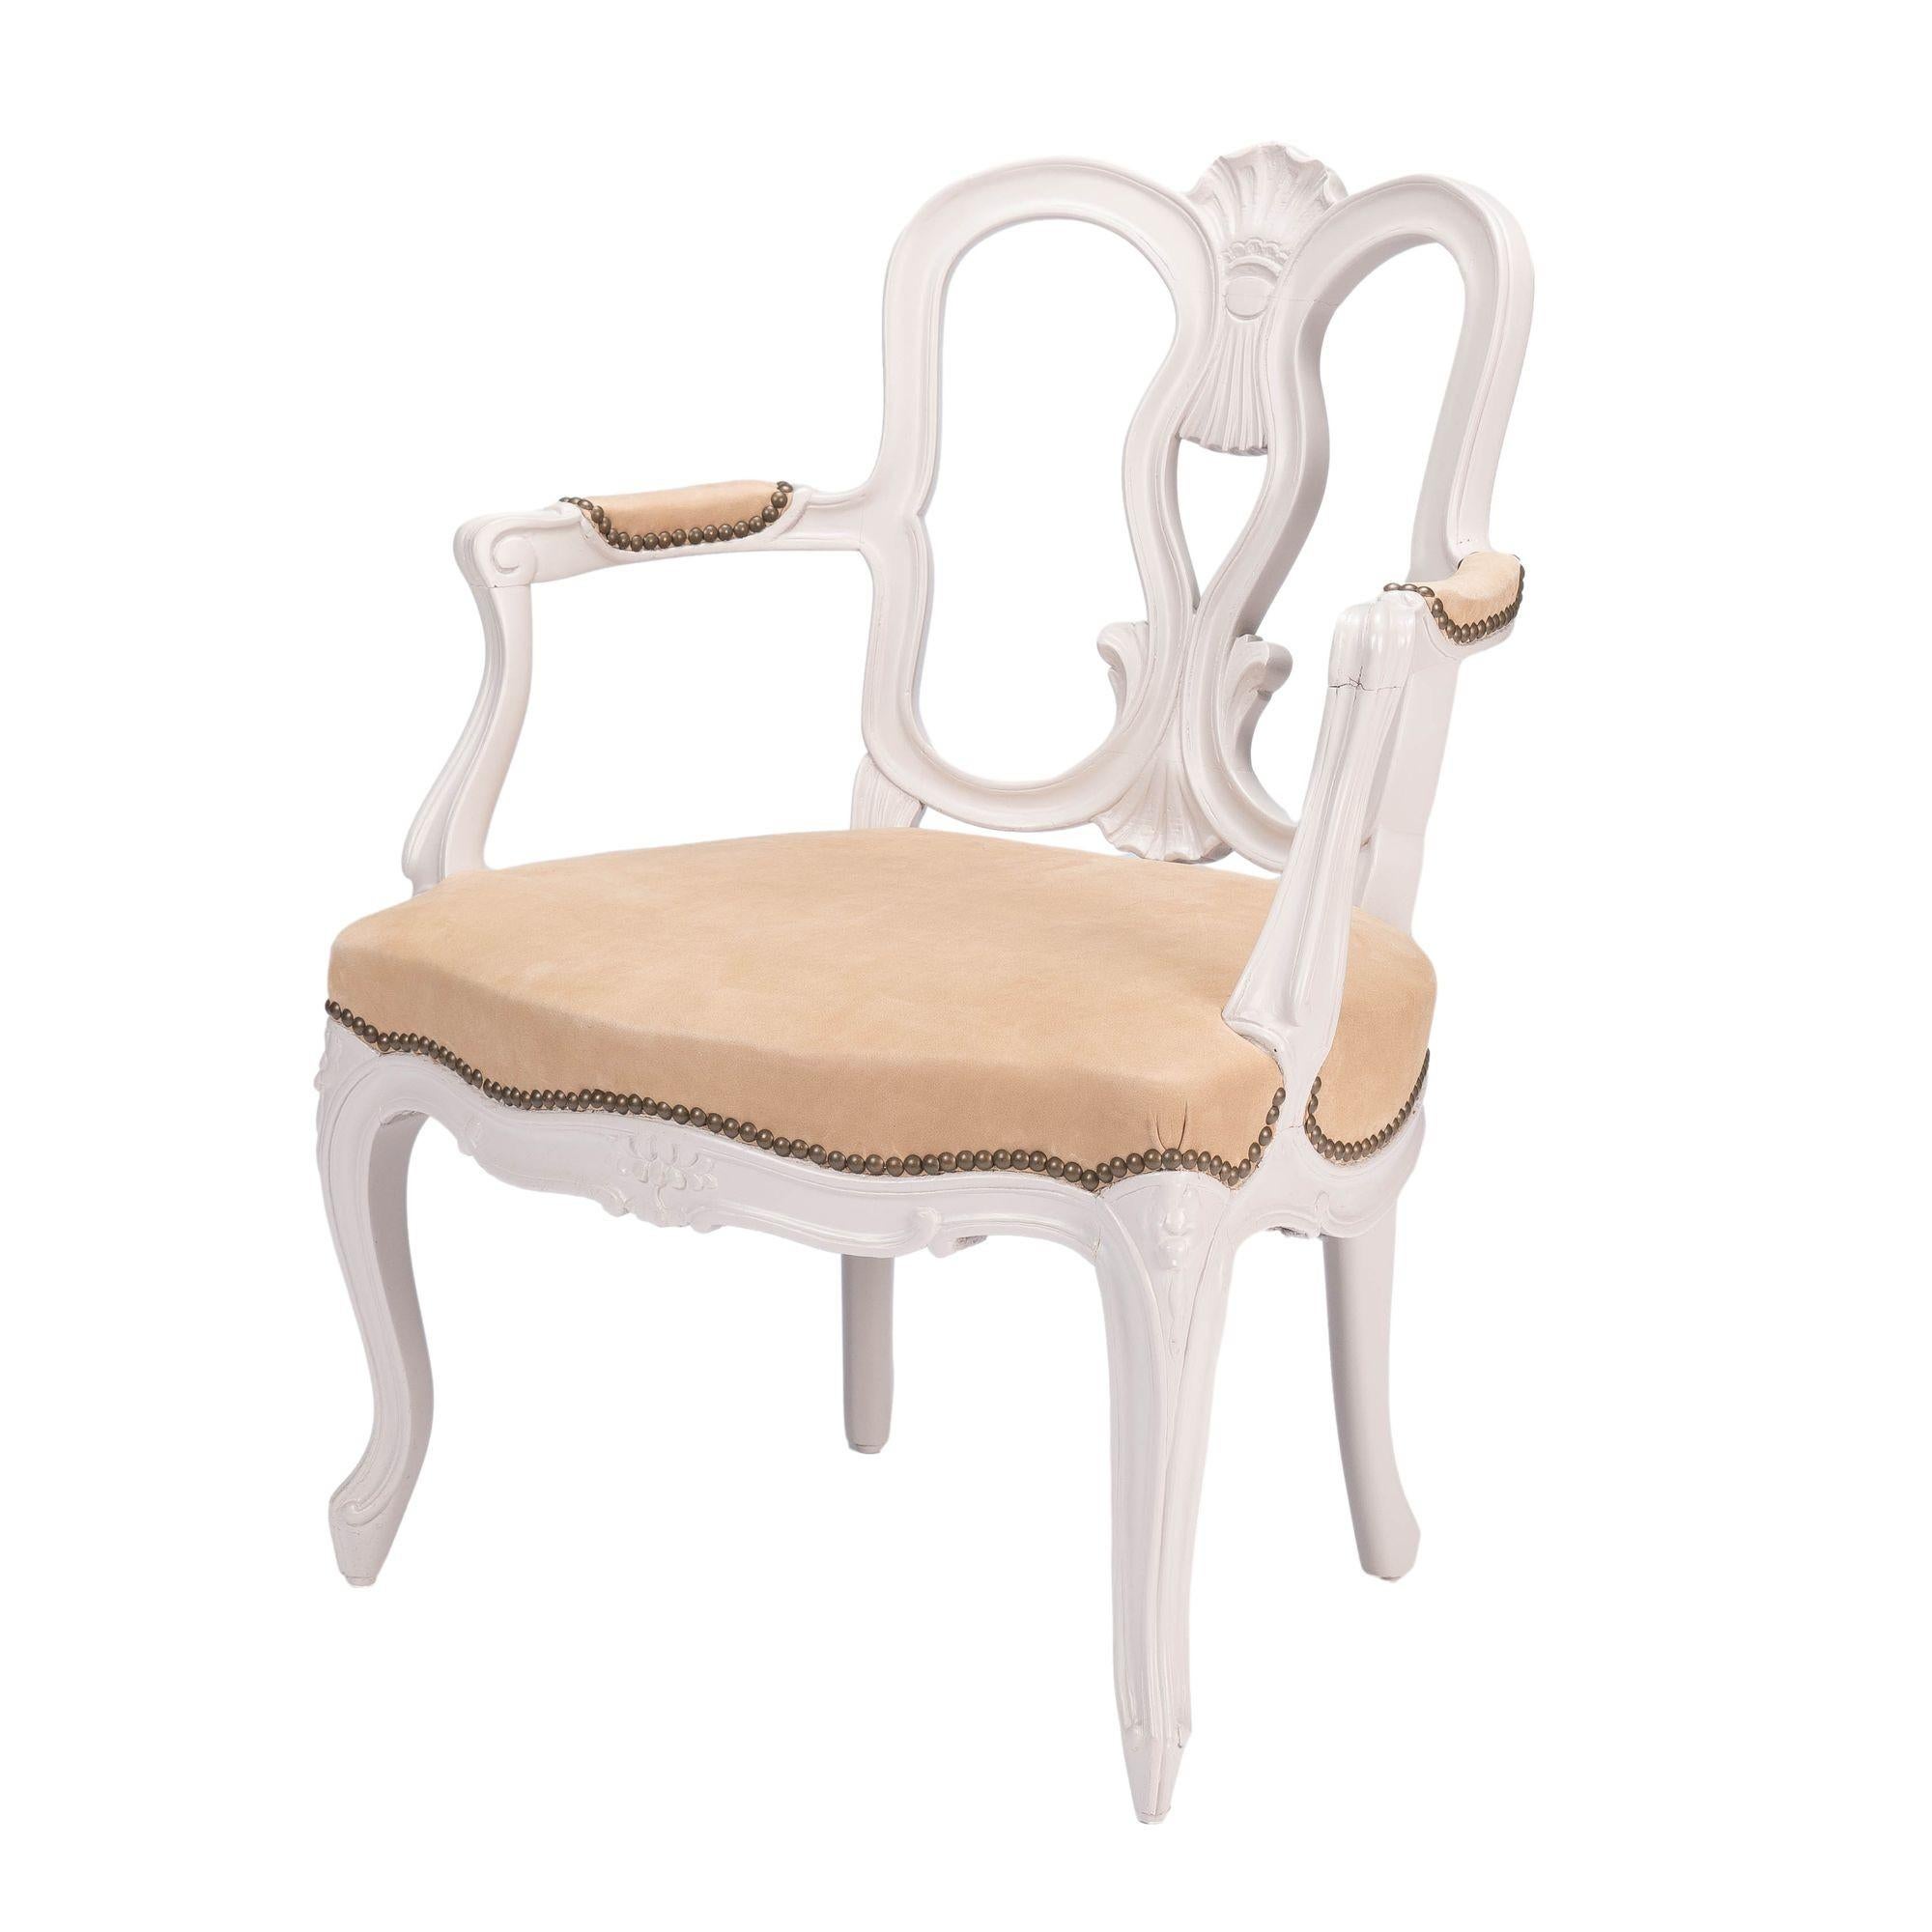 Fauteuil en hêtre peint de style Louis XIV avec siège et accoudoirs en cuir italien tanné à l'huile et garniture en laiton. Le cadre de la chaise a été recollé, stabilisé et repeint. Le siège a été récemment retapissé.

France, 1920-1930.